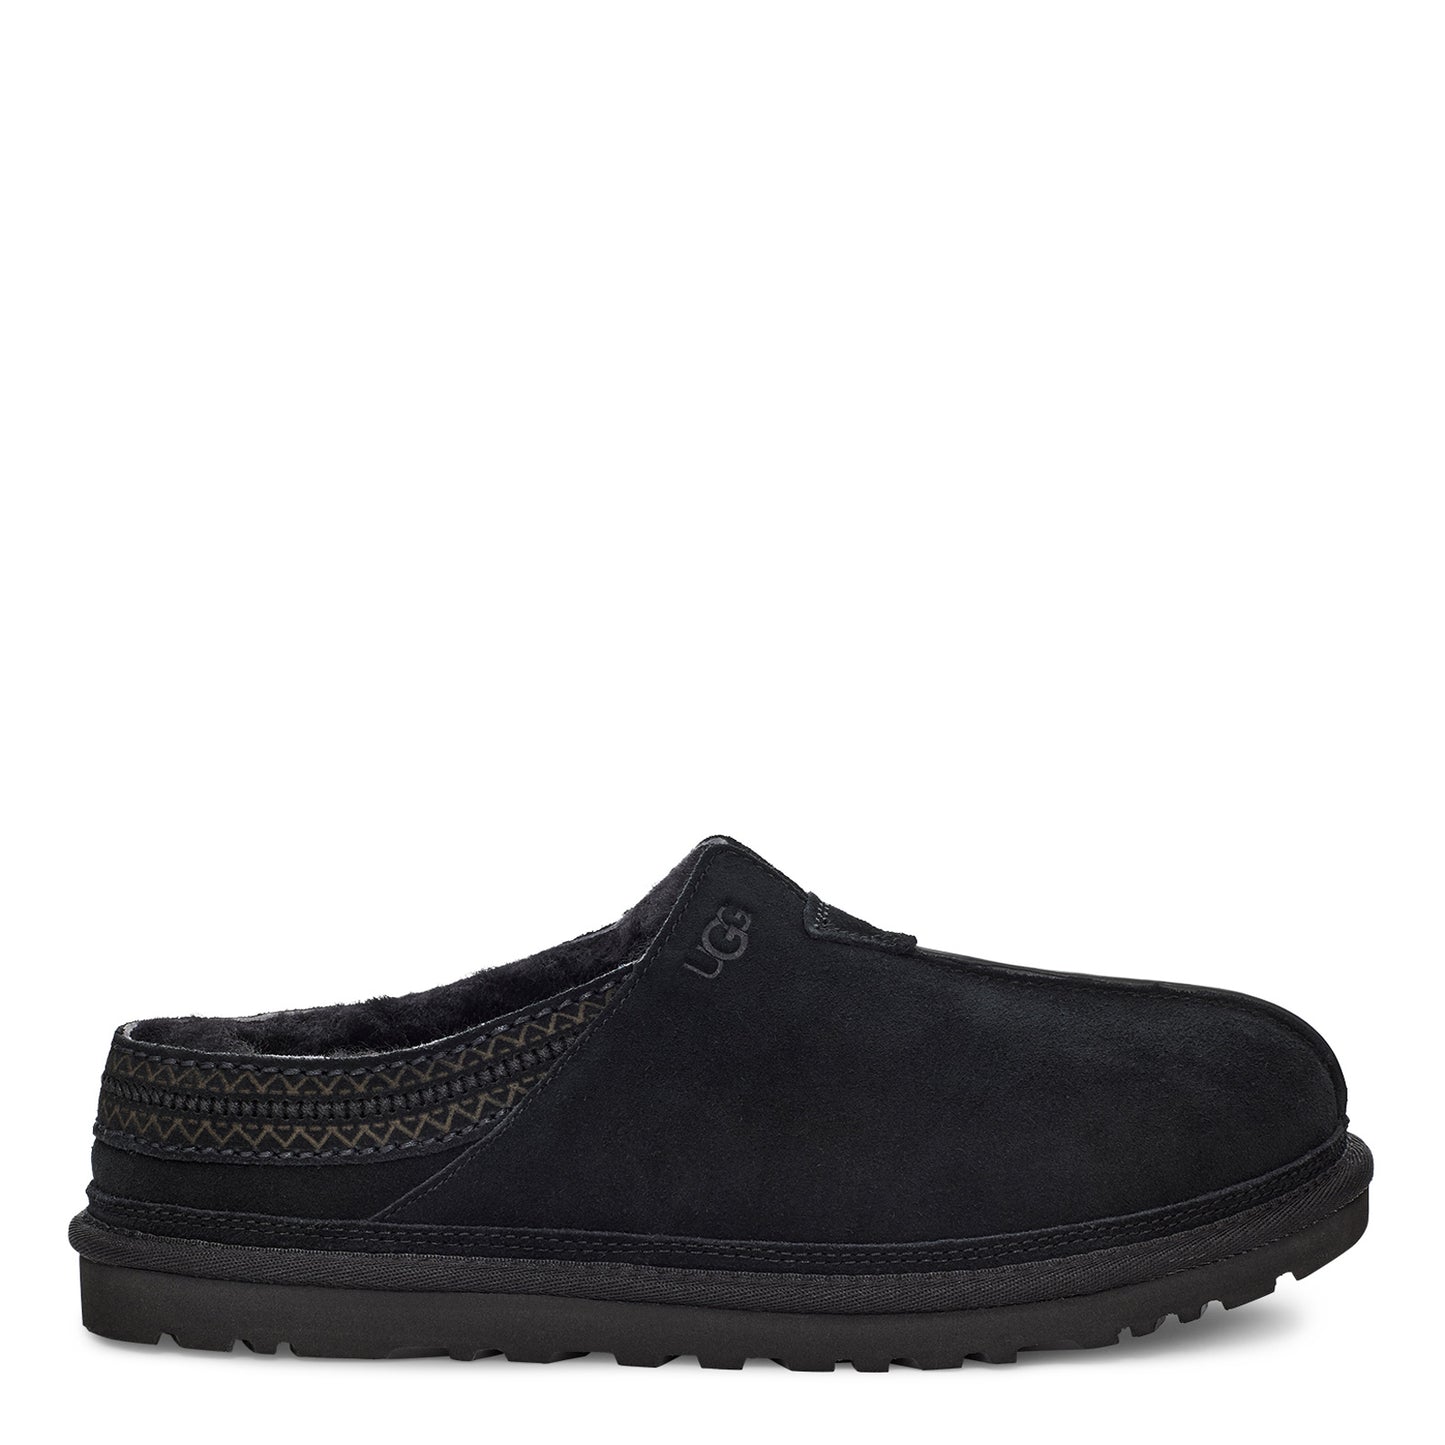 Peltz Shoes  Men's Ugg Neuman Slipper Black 1113631-BLK